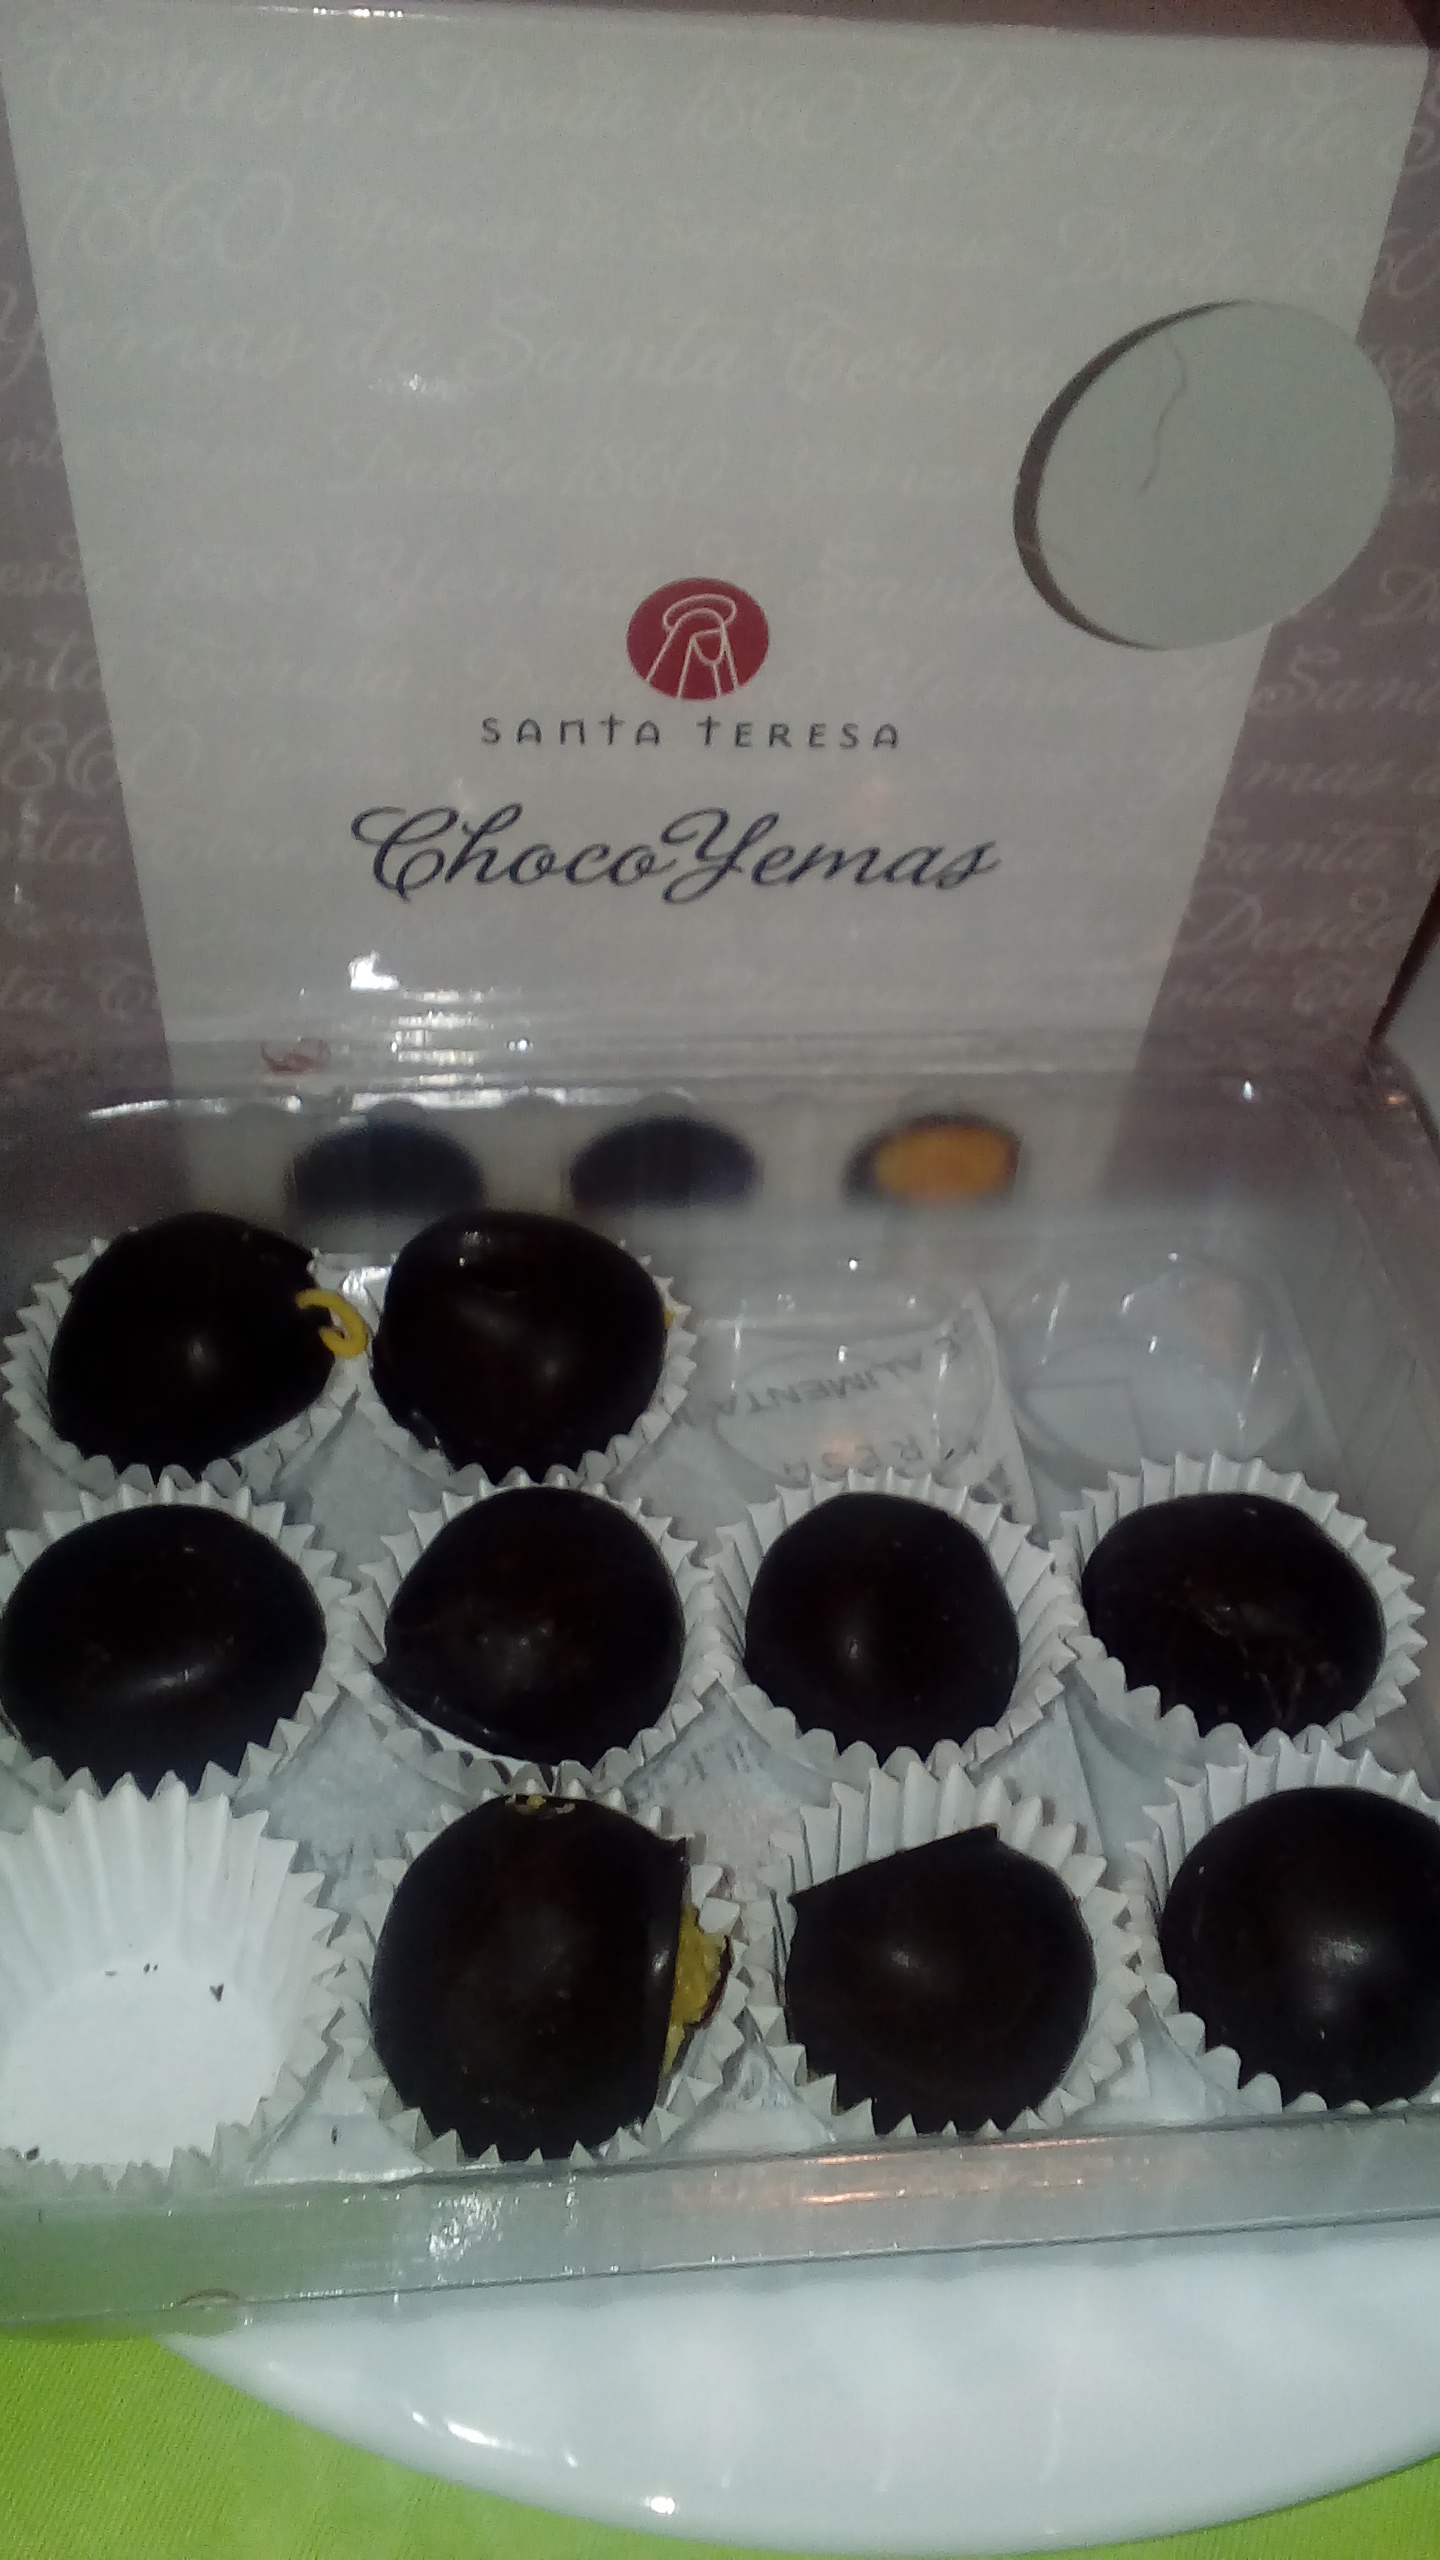 Choco Yemas de Santa Teresa